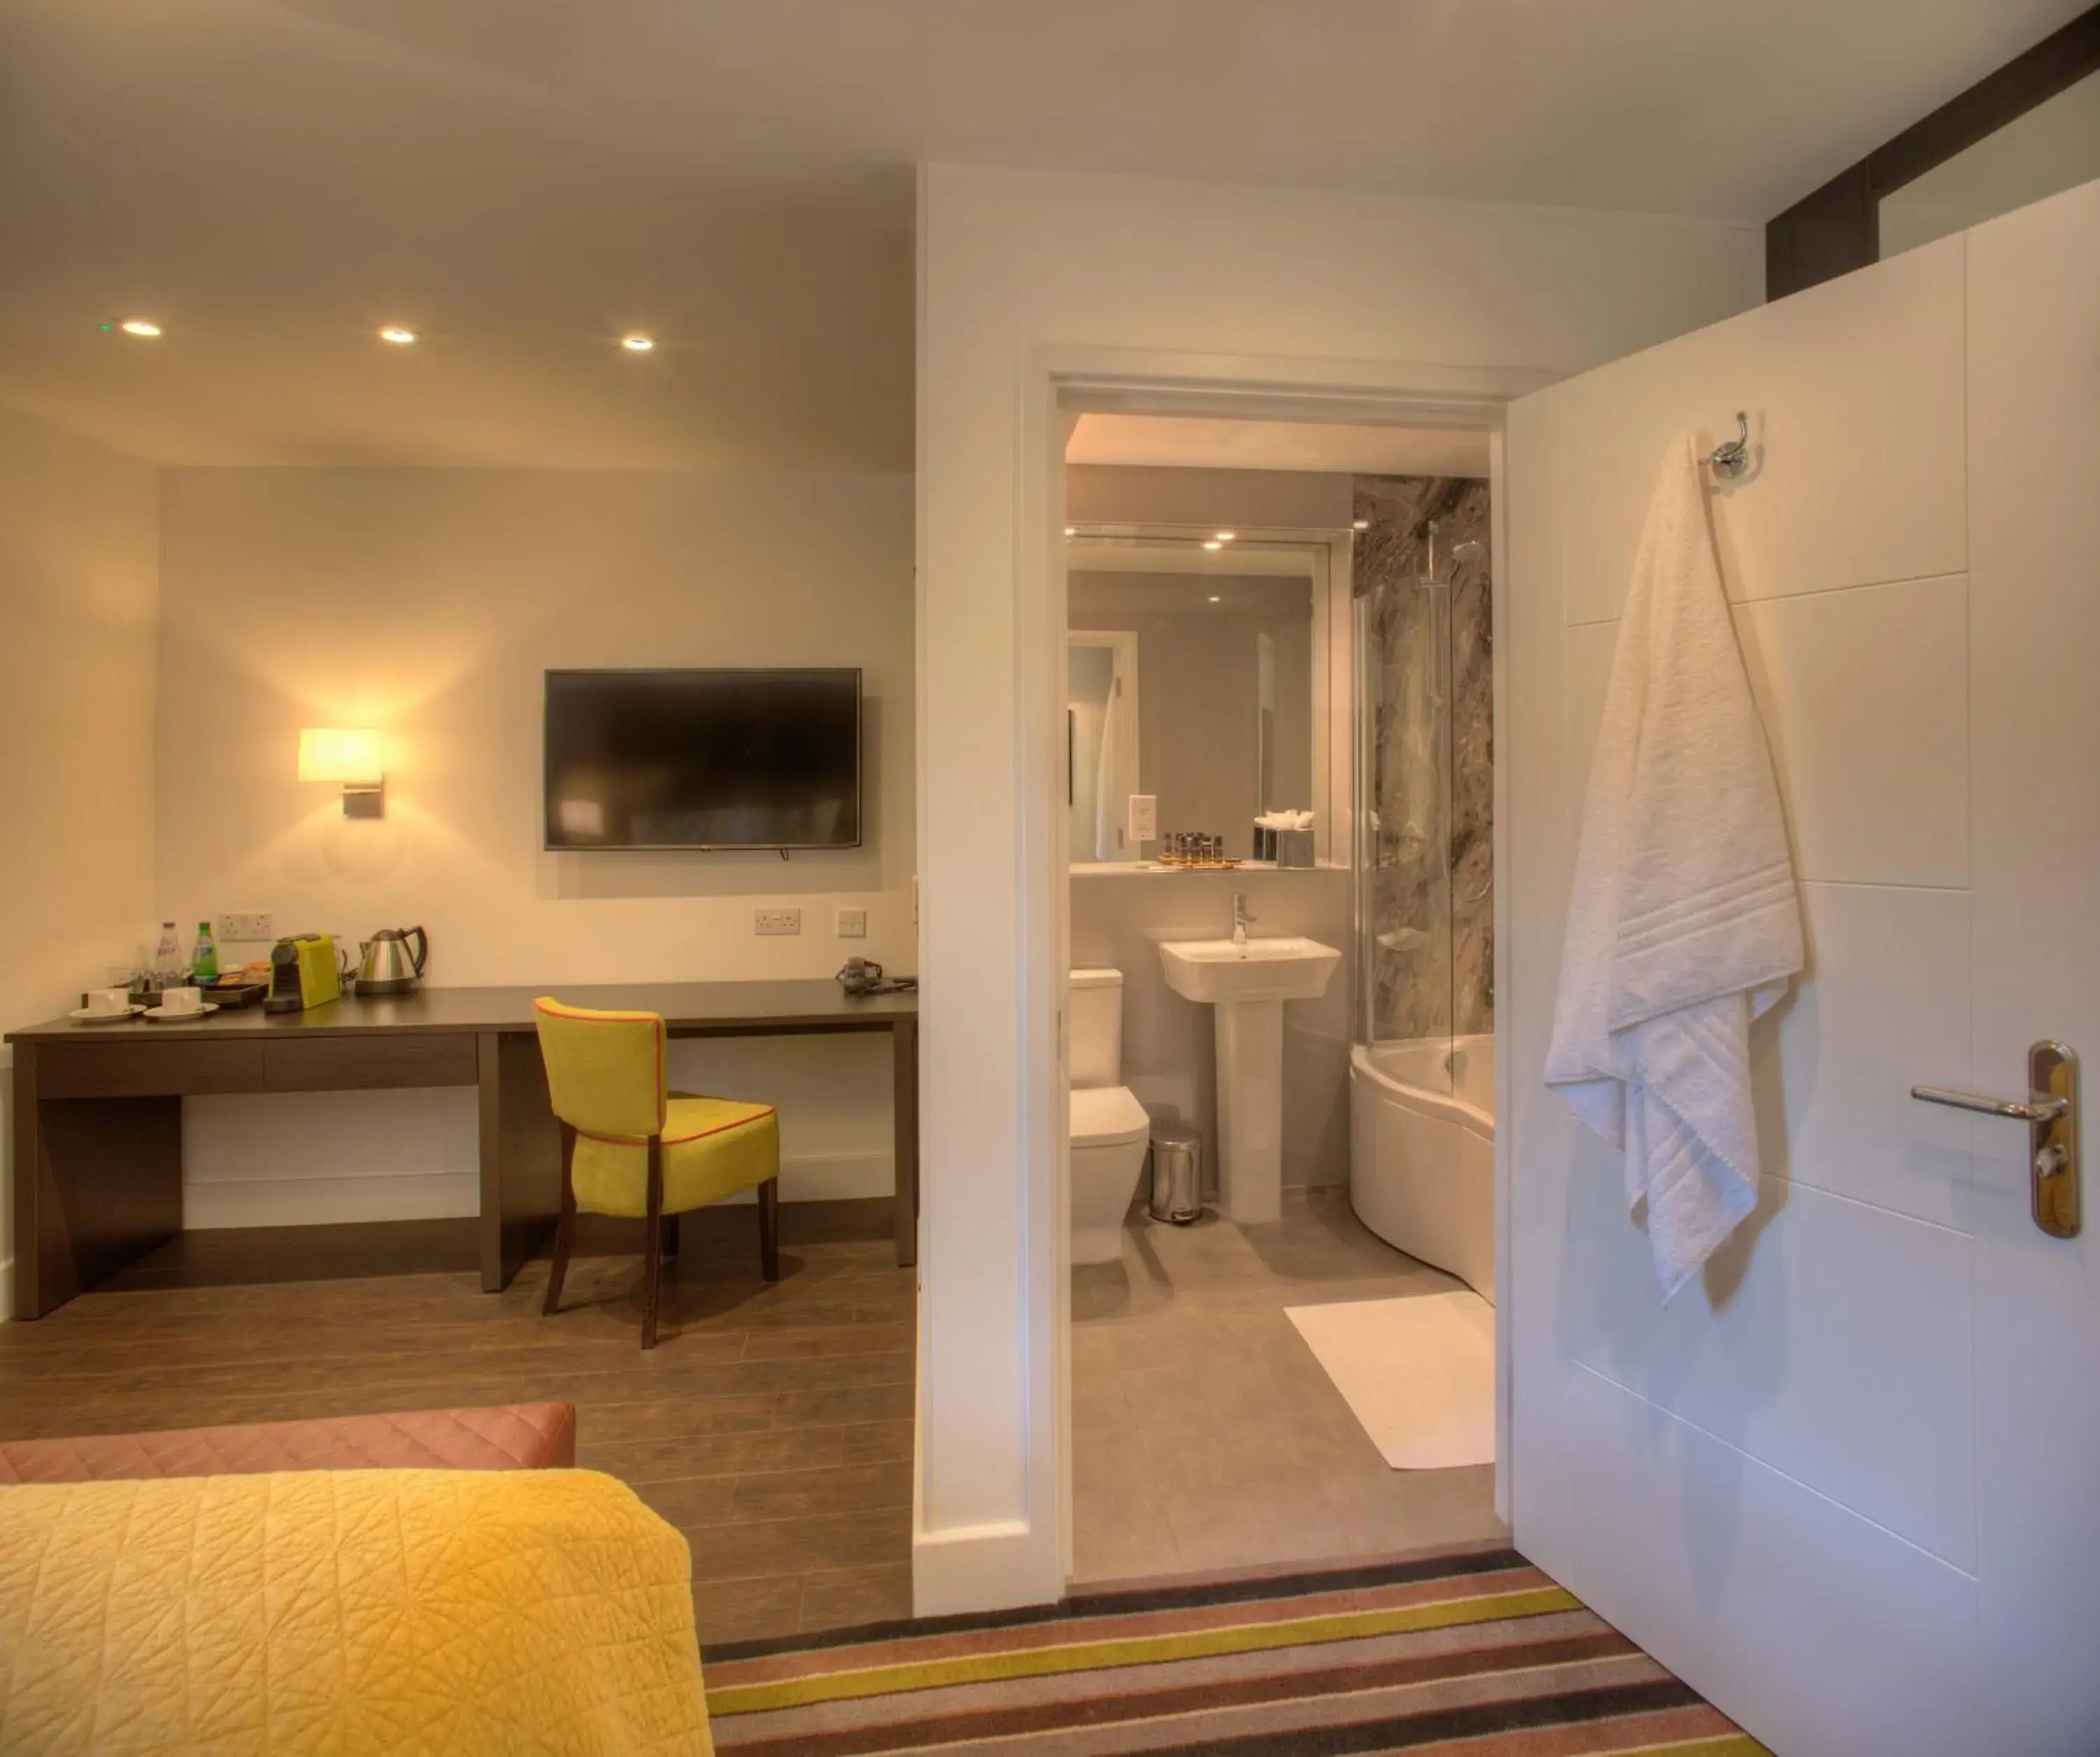 Bathroom in Denbies Vineyard Hotel